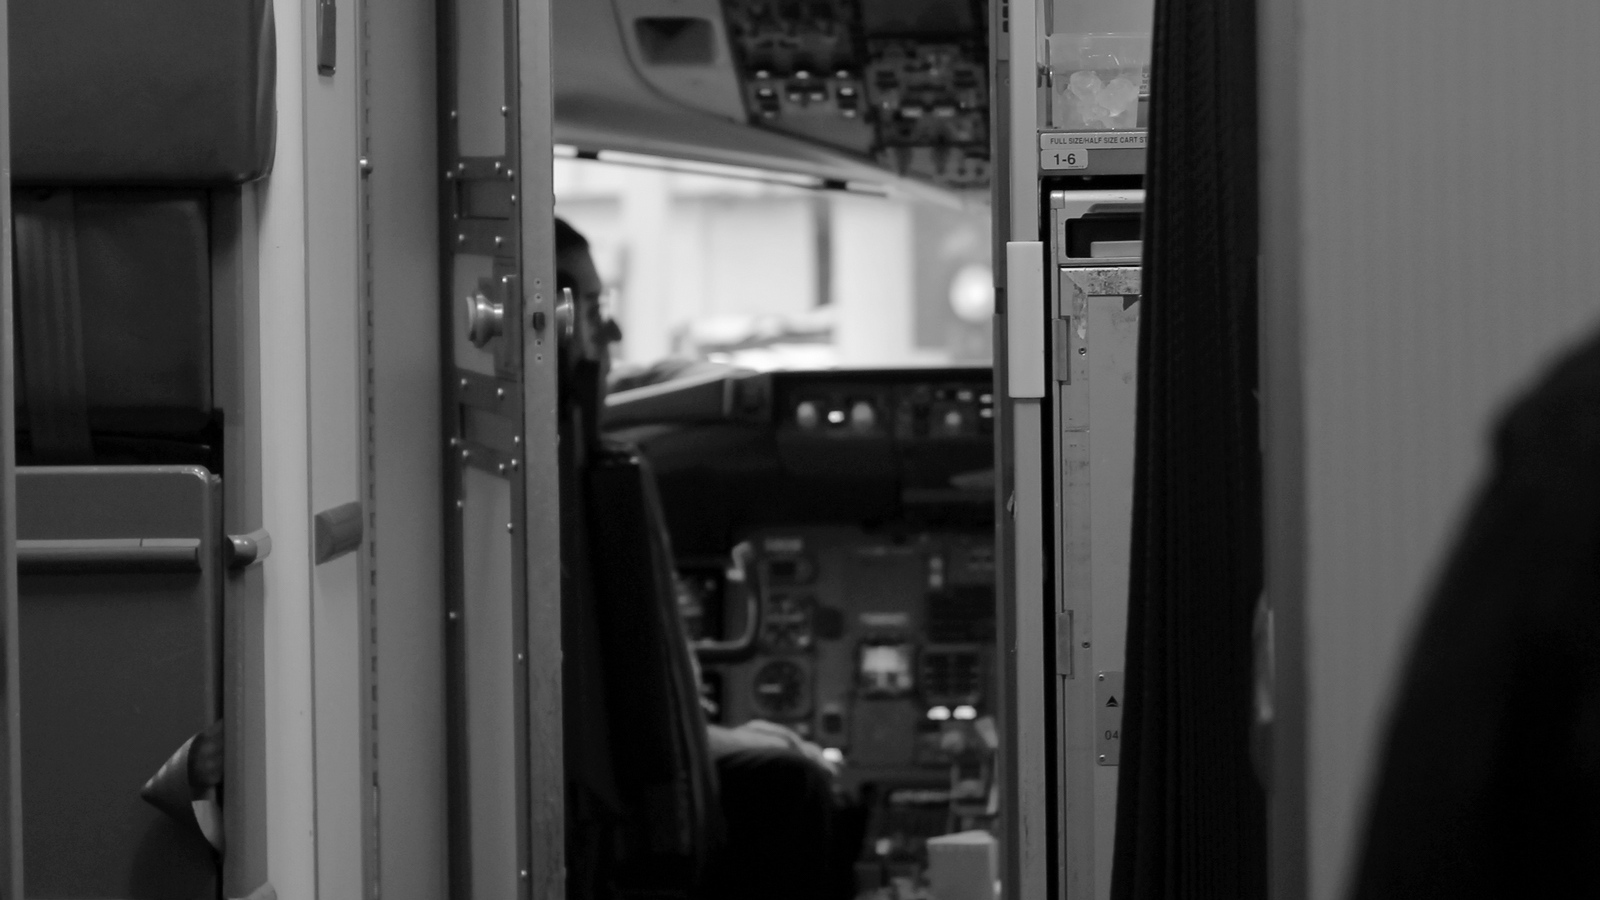 Boeing 757 cockpit door